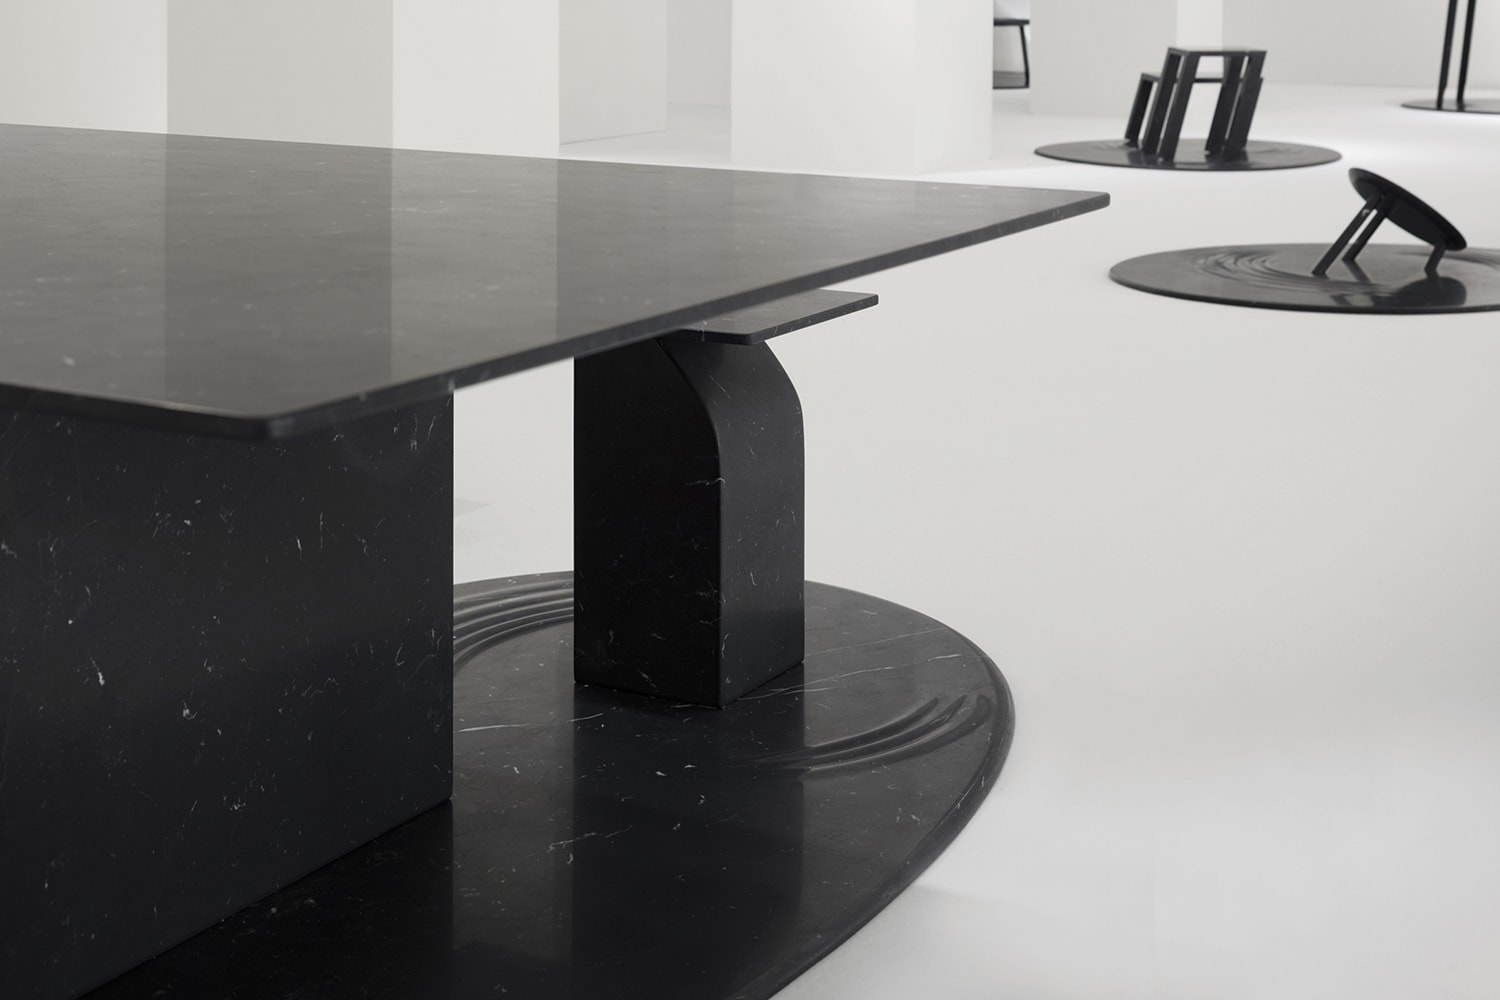 Nendo into marble installation marsotto edizioni milan design week 2018 furniture